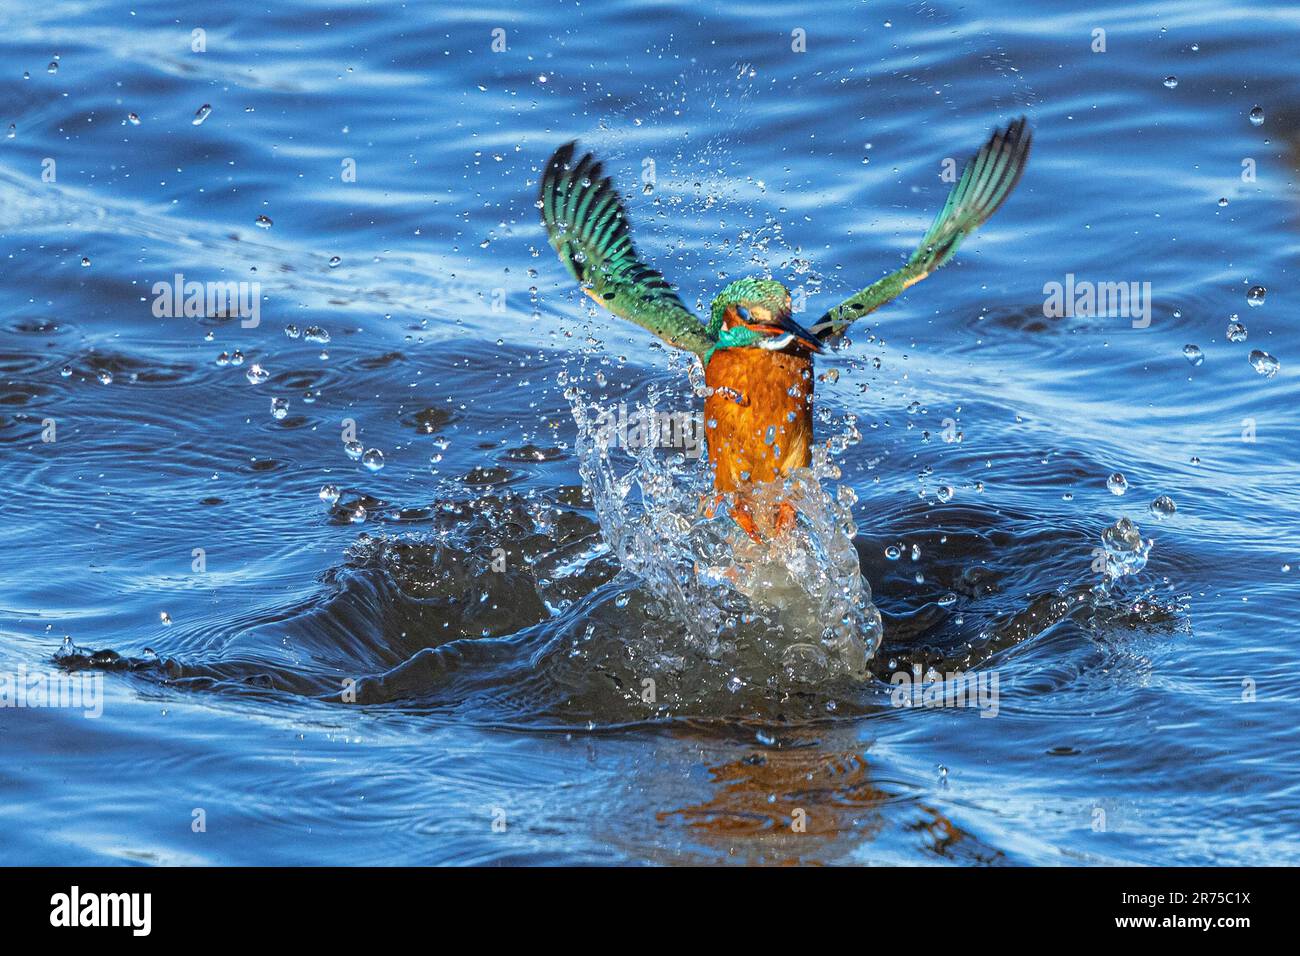 rivière kingfisher (Alcedo atthis), tiré hors de l'eau entourée de gouttes d'eau avec poissons proies, vue de face, Allemagne, Bavière Banque D'Images